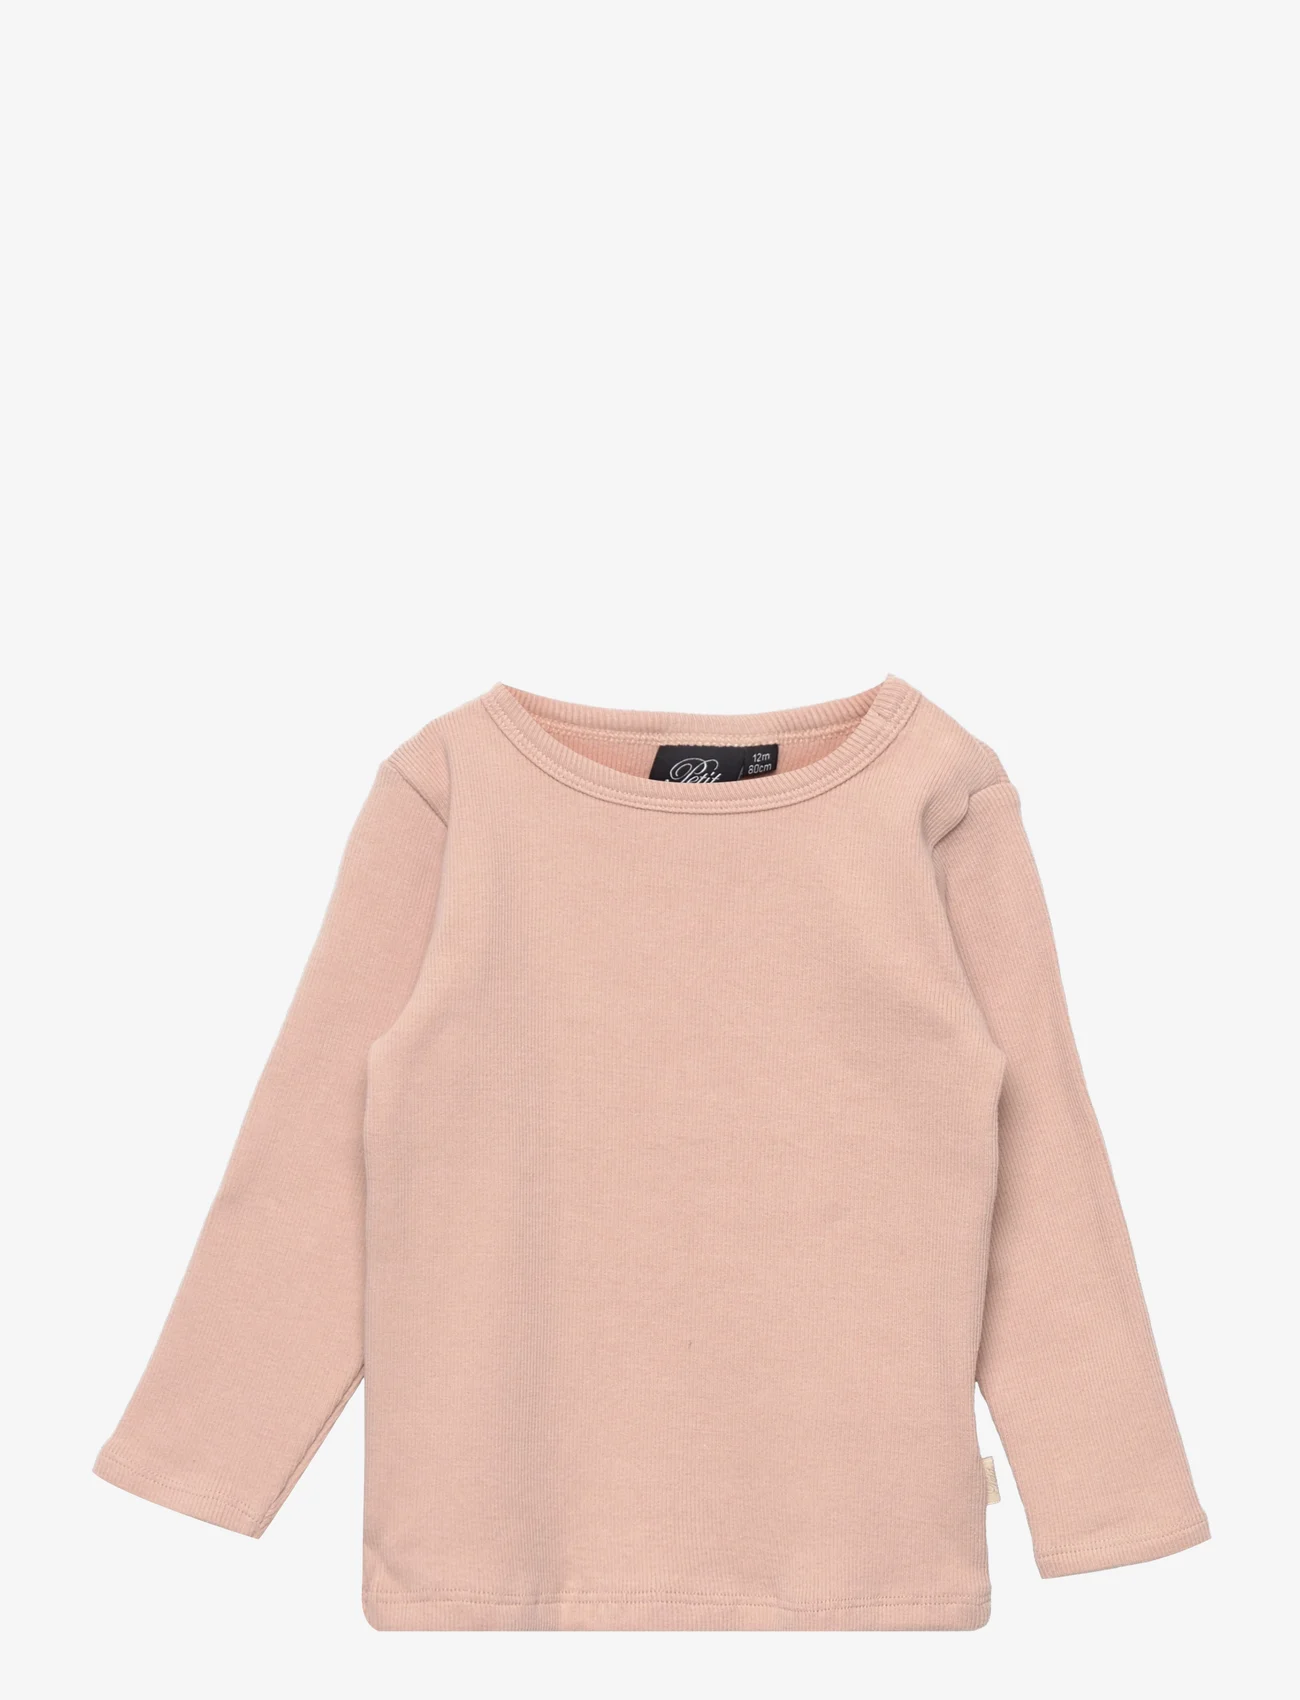 Sofie Schnoor Baby and Kids - T-shirt long-sleeve - pitkähihaiset t-paidat - light rose - 0